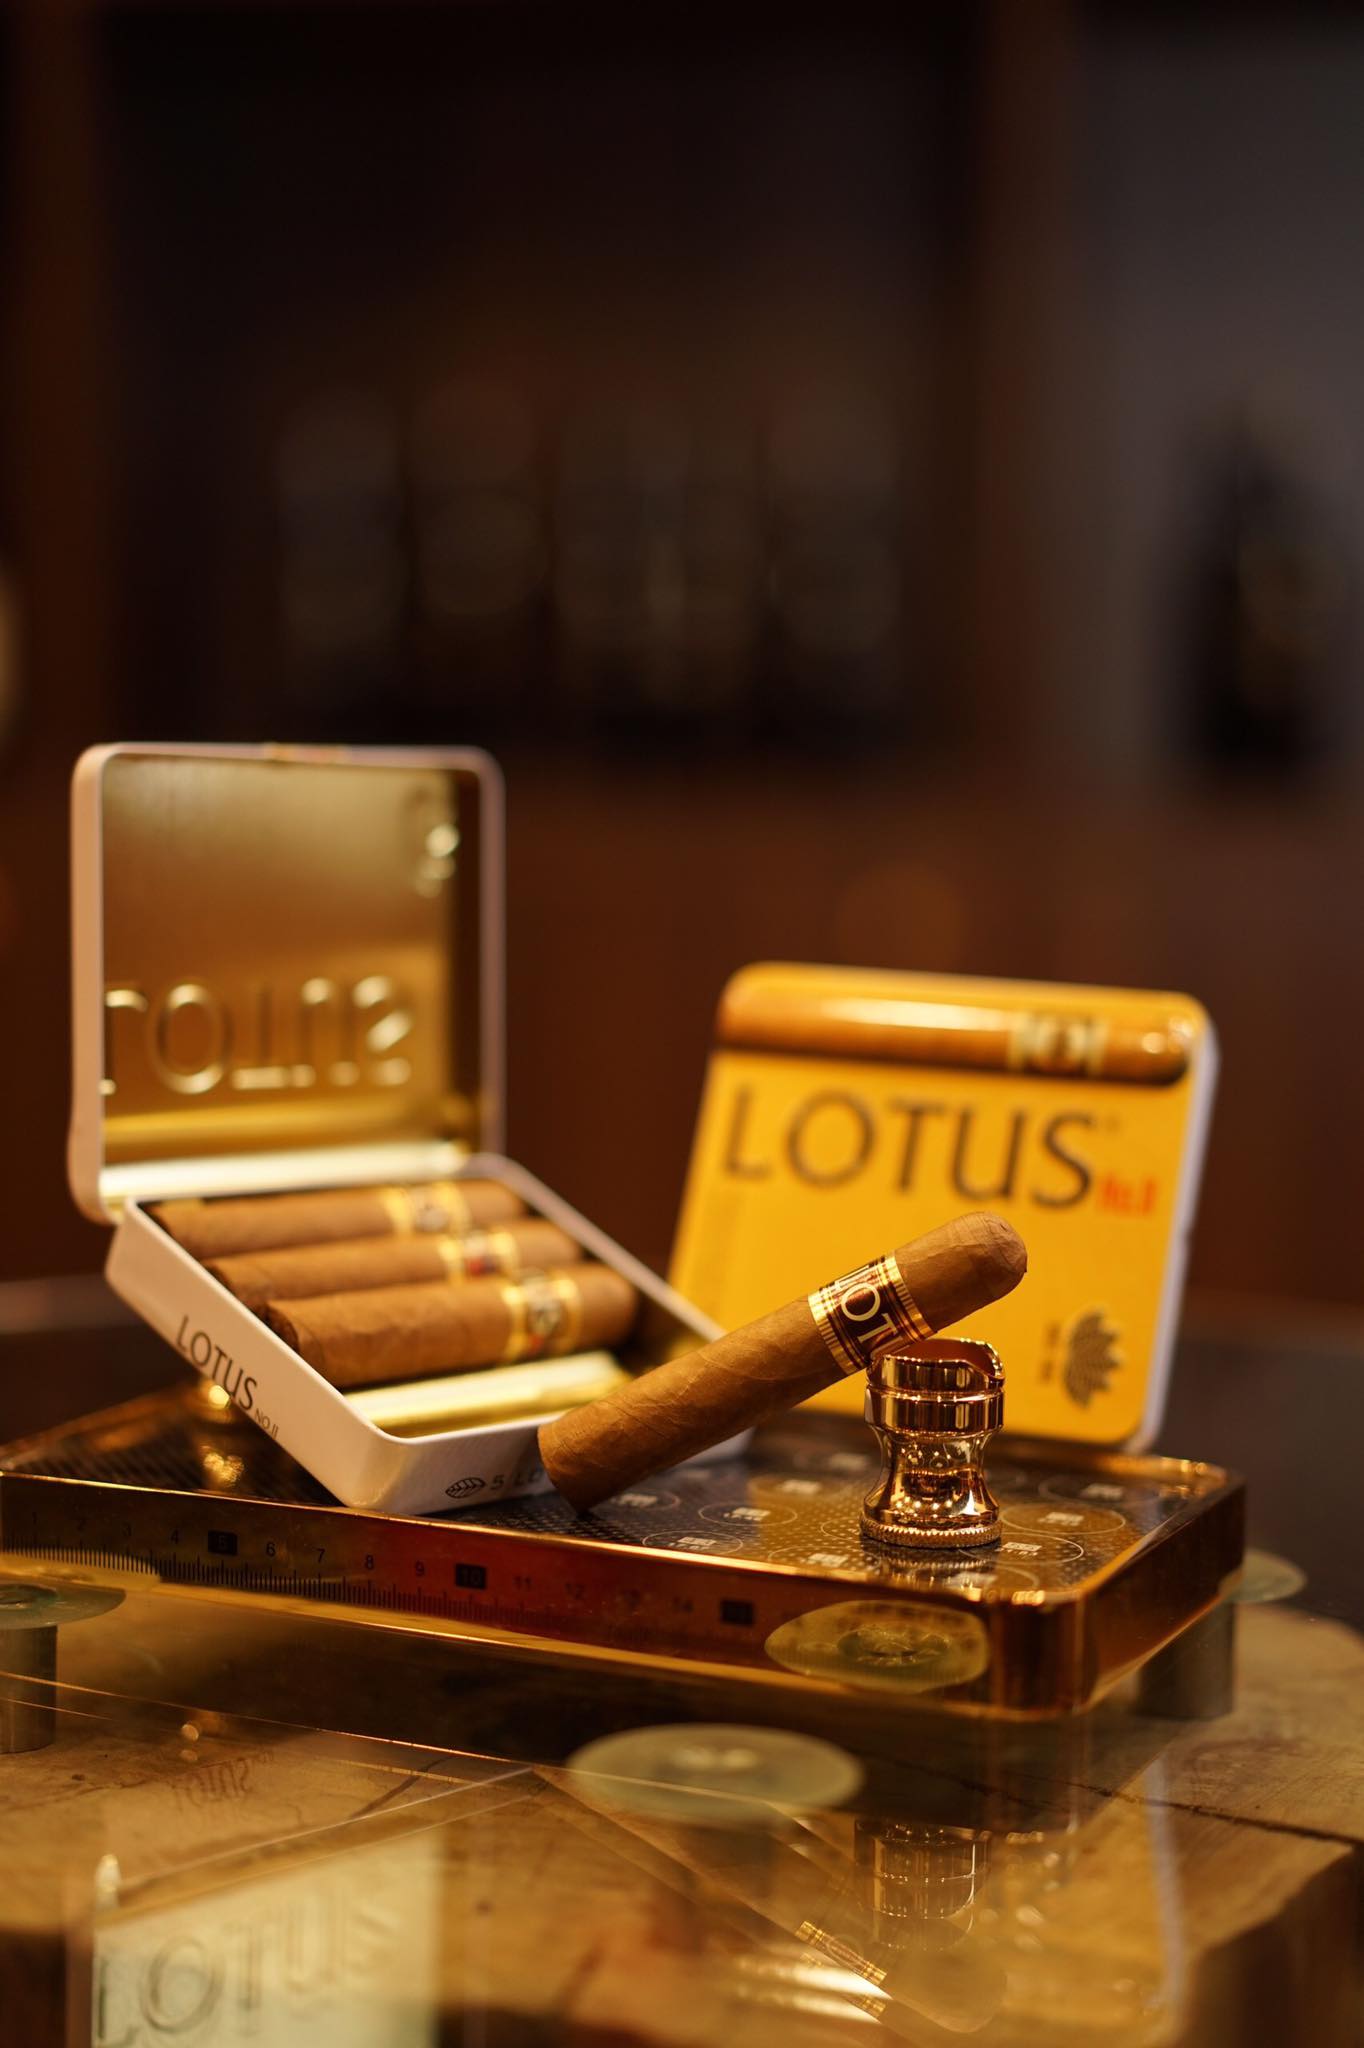 cigar-lotus-viet-nam-1